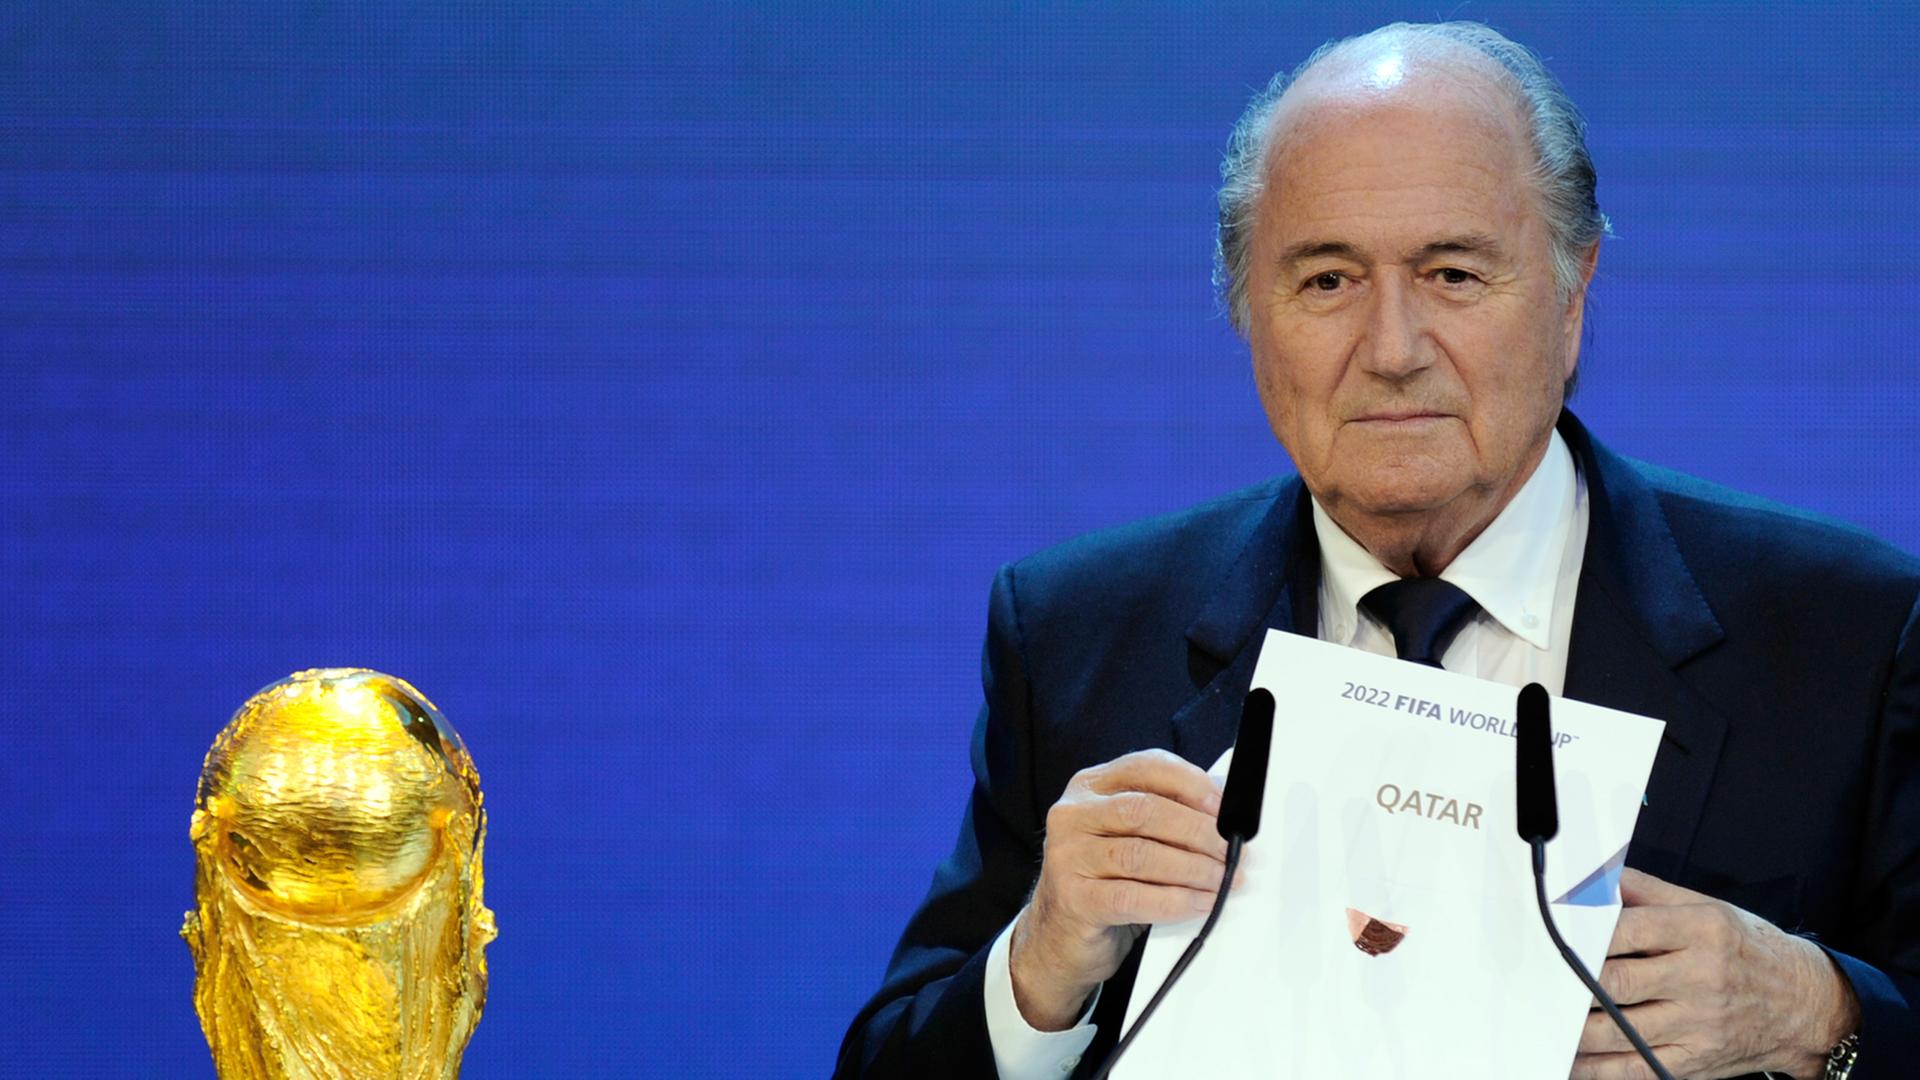 Fifa-Präsident Joseph Blatter bei der Bekanntgabe der WM-Ausrichter 2018 und 2022